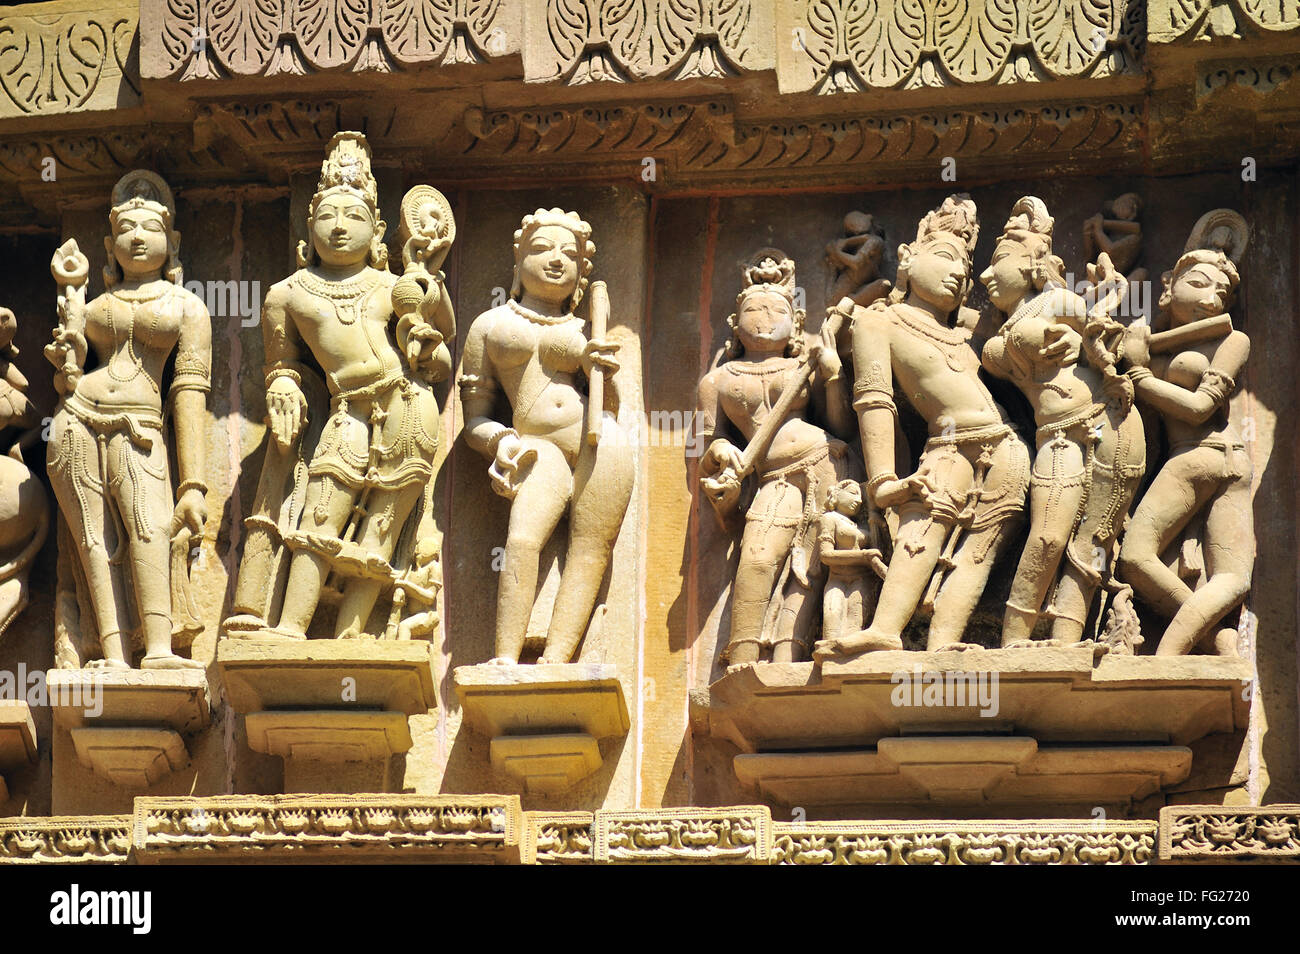 Orné de sculptures de Khajuraho sculpté sur le mur de lakshmana temple Madhya Pradesh inde Banque D'Images